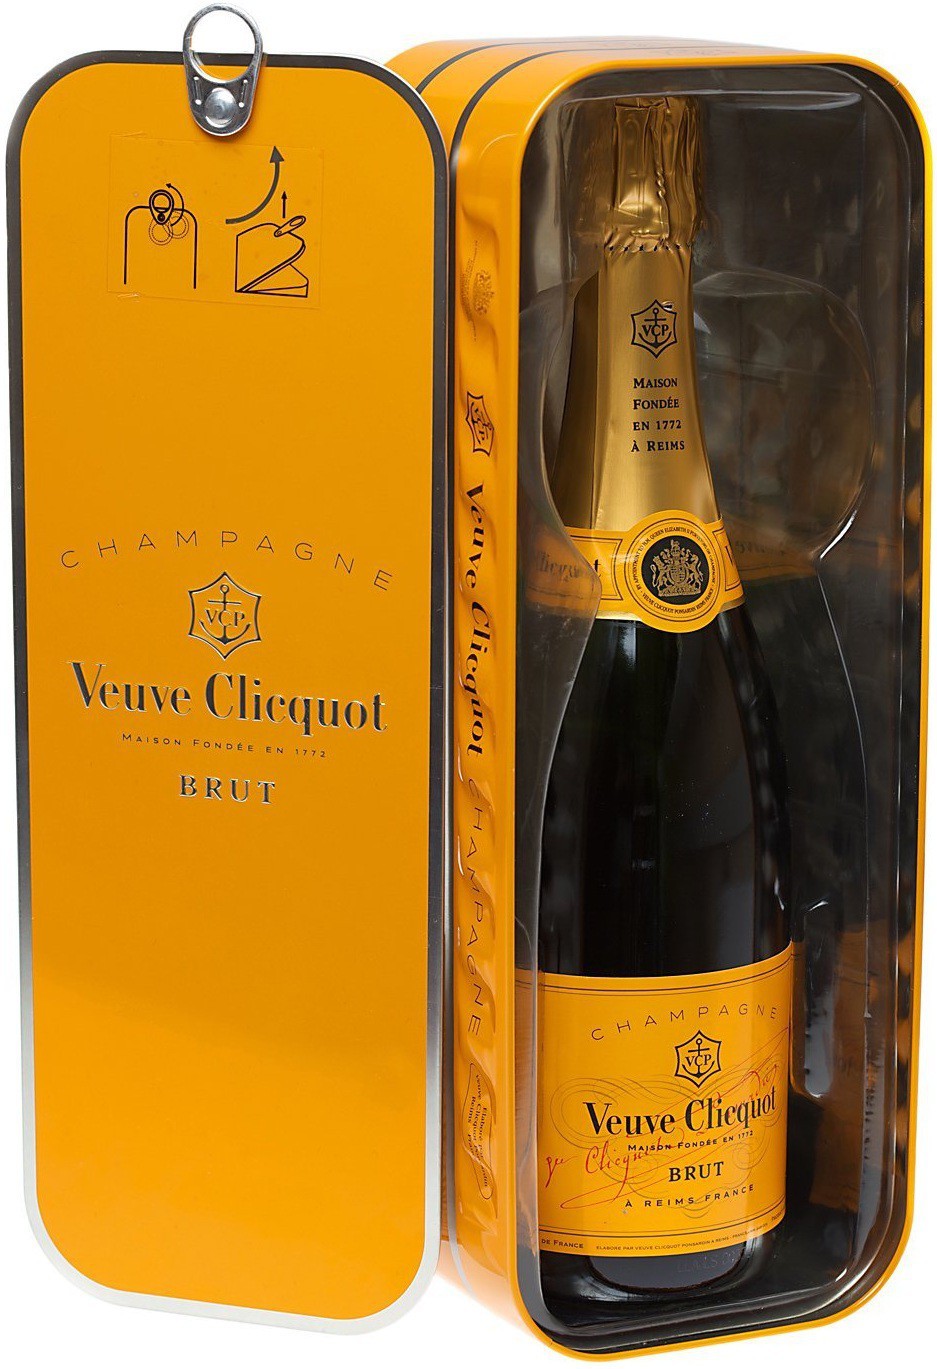 Вино вдова. Шампанское Veuve Clicquot, Brut. Французское шампанское Veuve Clicquot. Шампань вдова Клико. Шампанское вдова Клико брют.